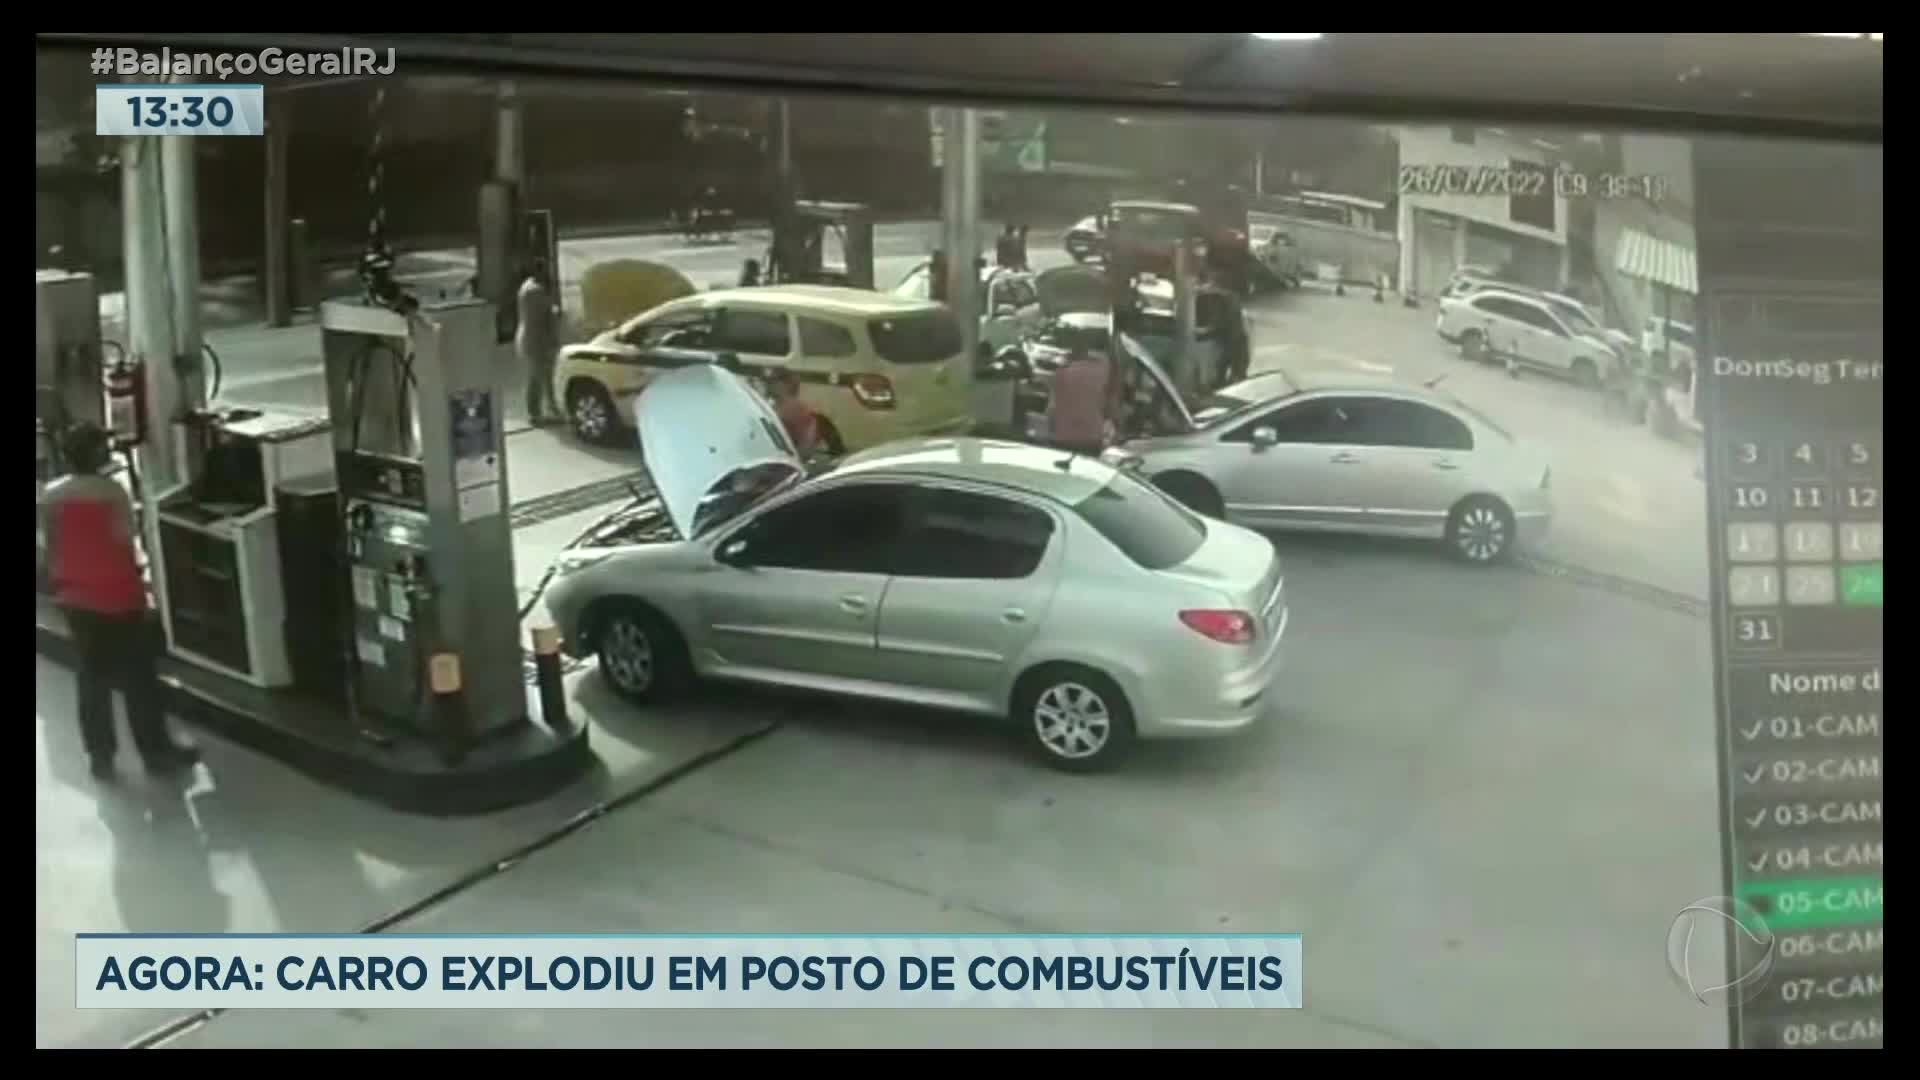 Vídeo: ATENÇÃO, IMAGENS FORTES: Vídeo mostra explosão em posto de combustíveis no Rio